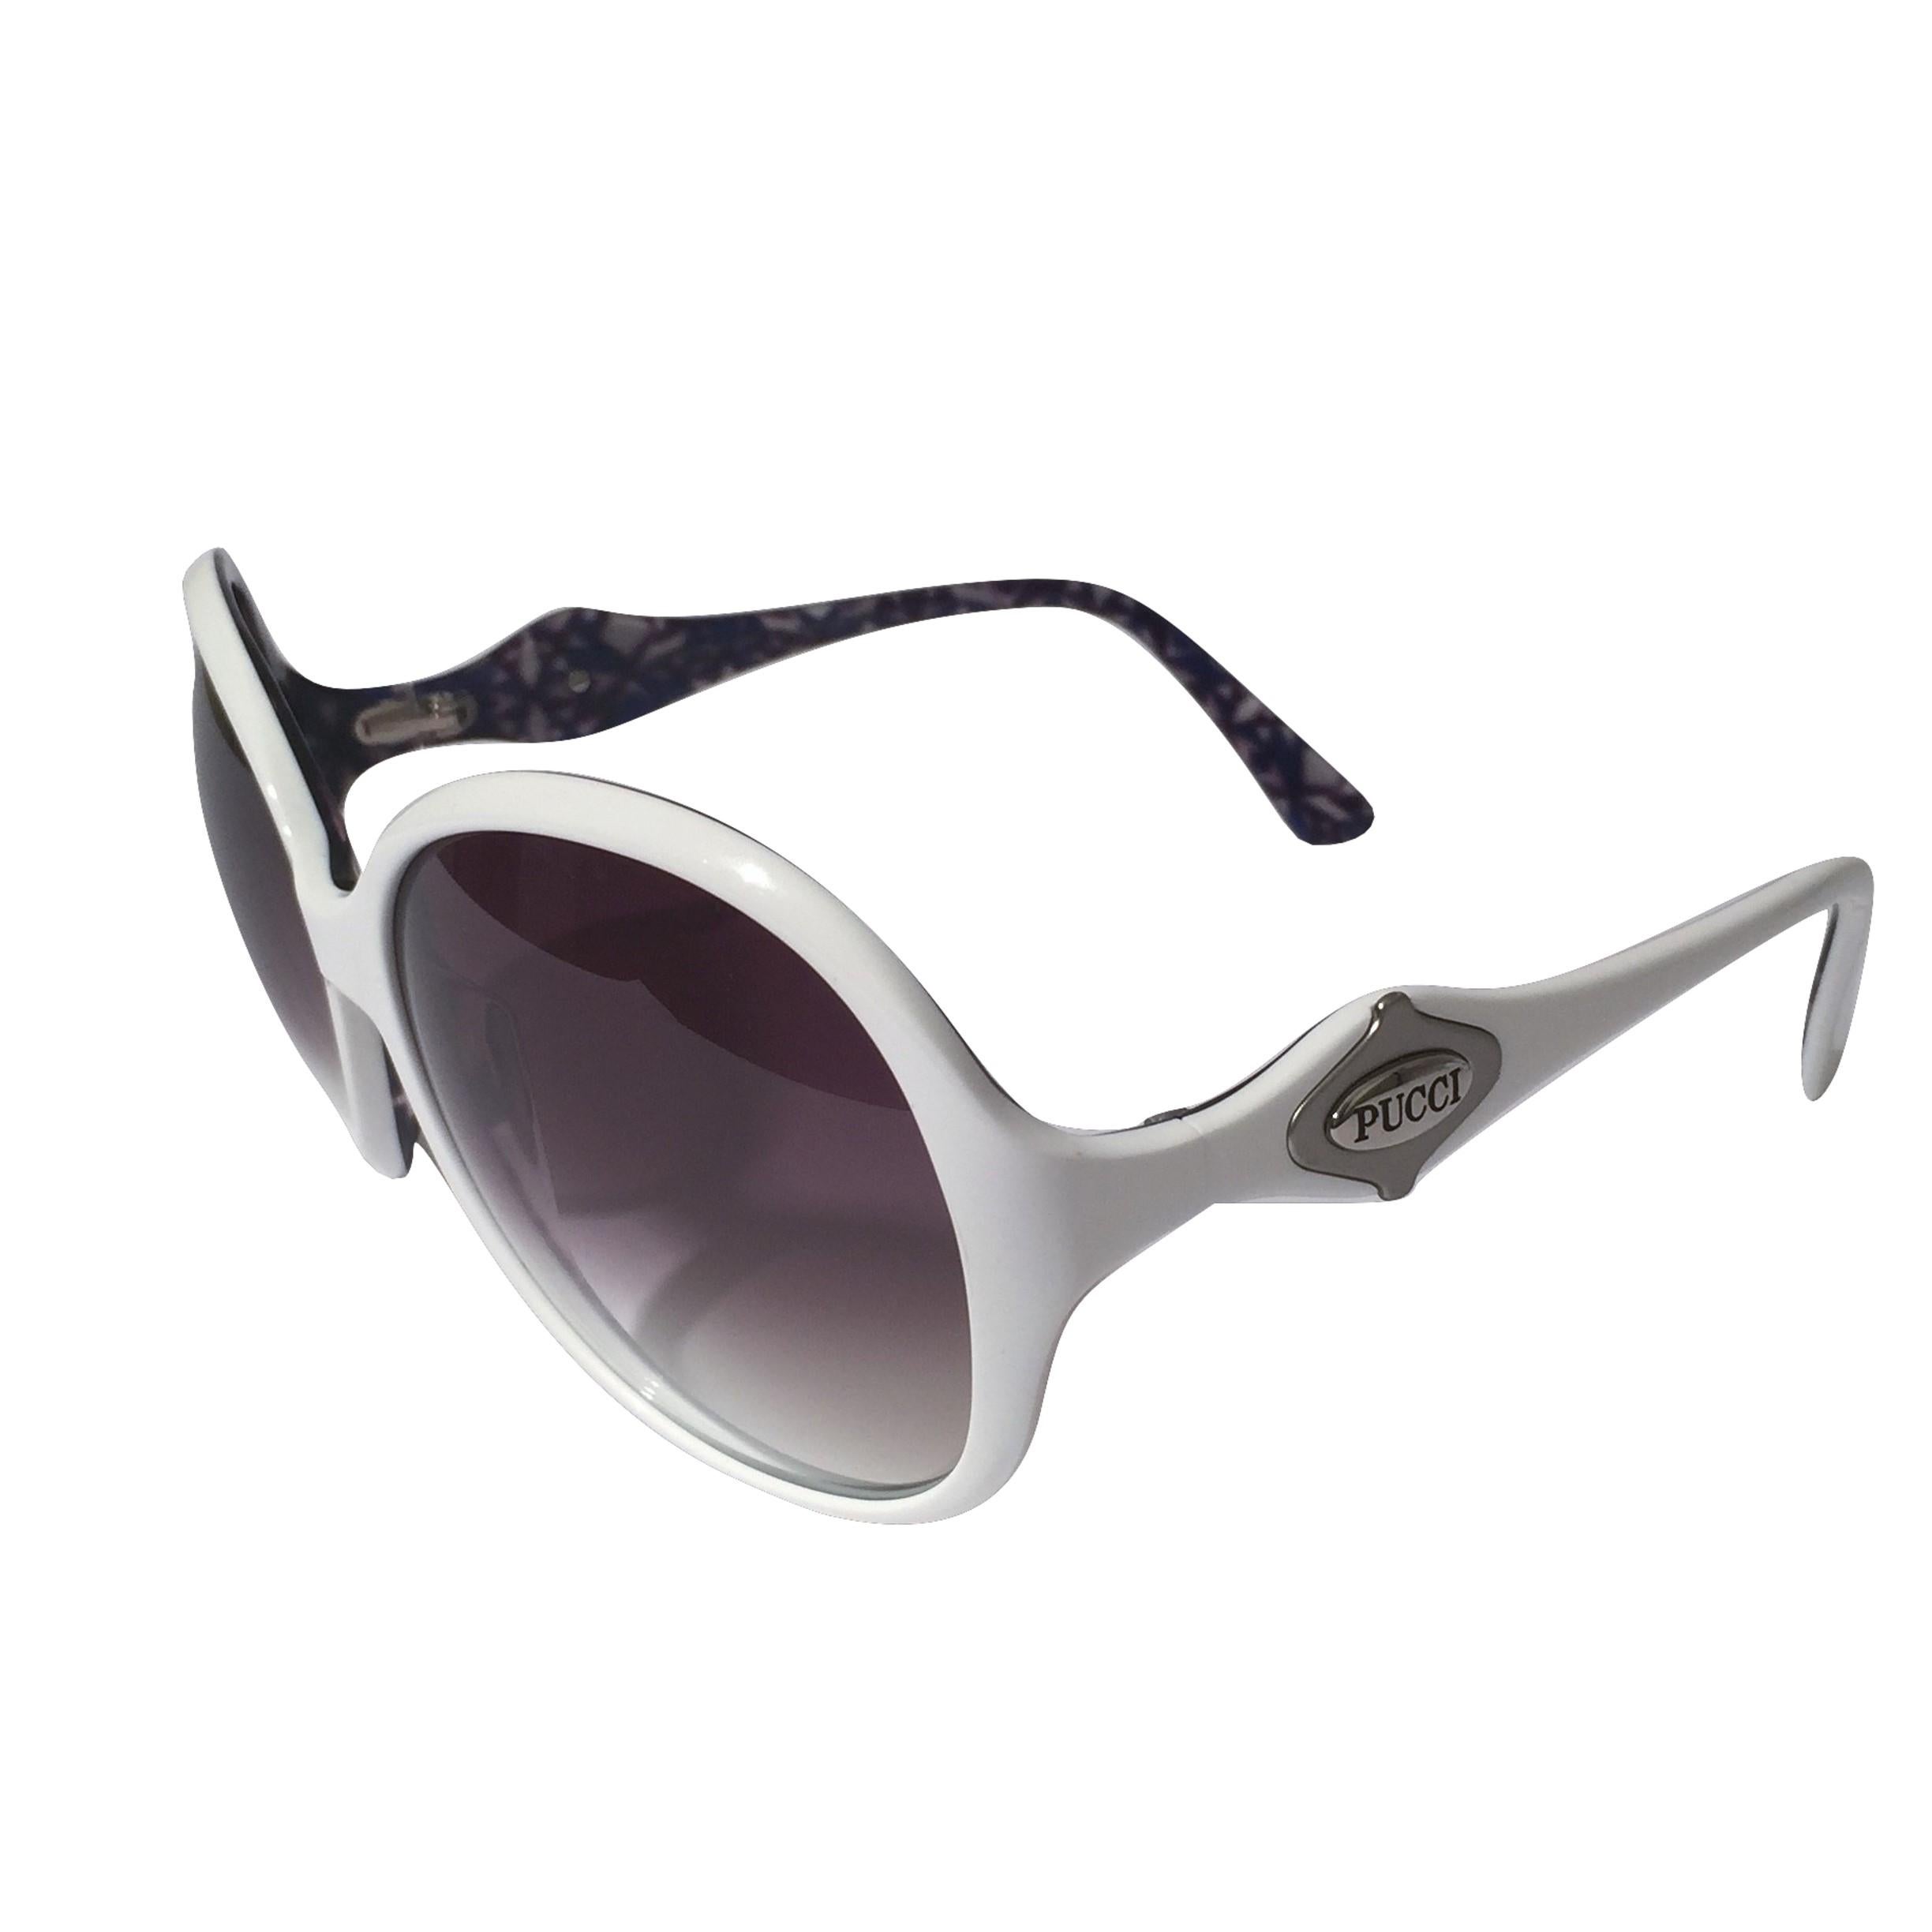 New Emilio Pucci White Logo Sunglasses  With Case & Box 3